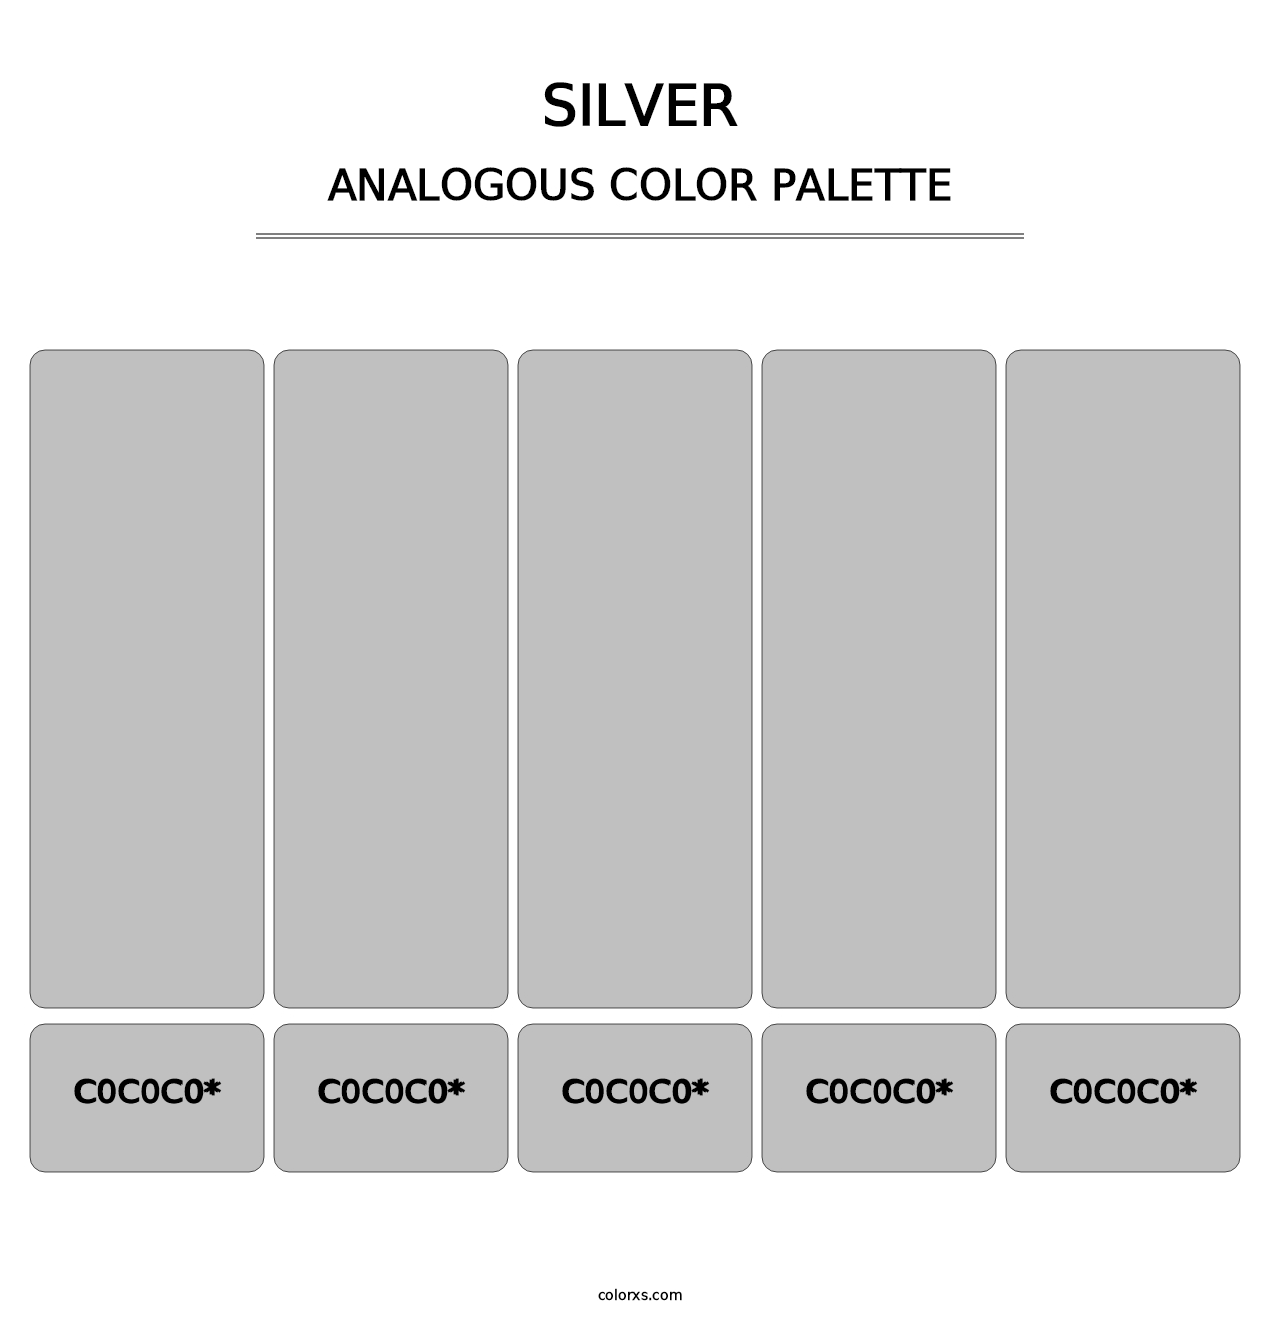 Silver - Analogous Color Palette